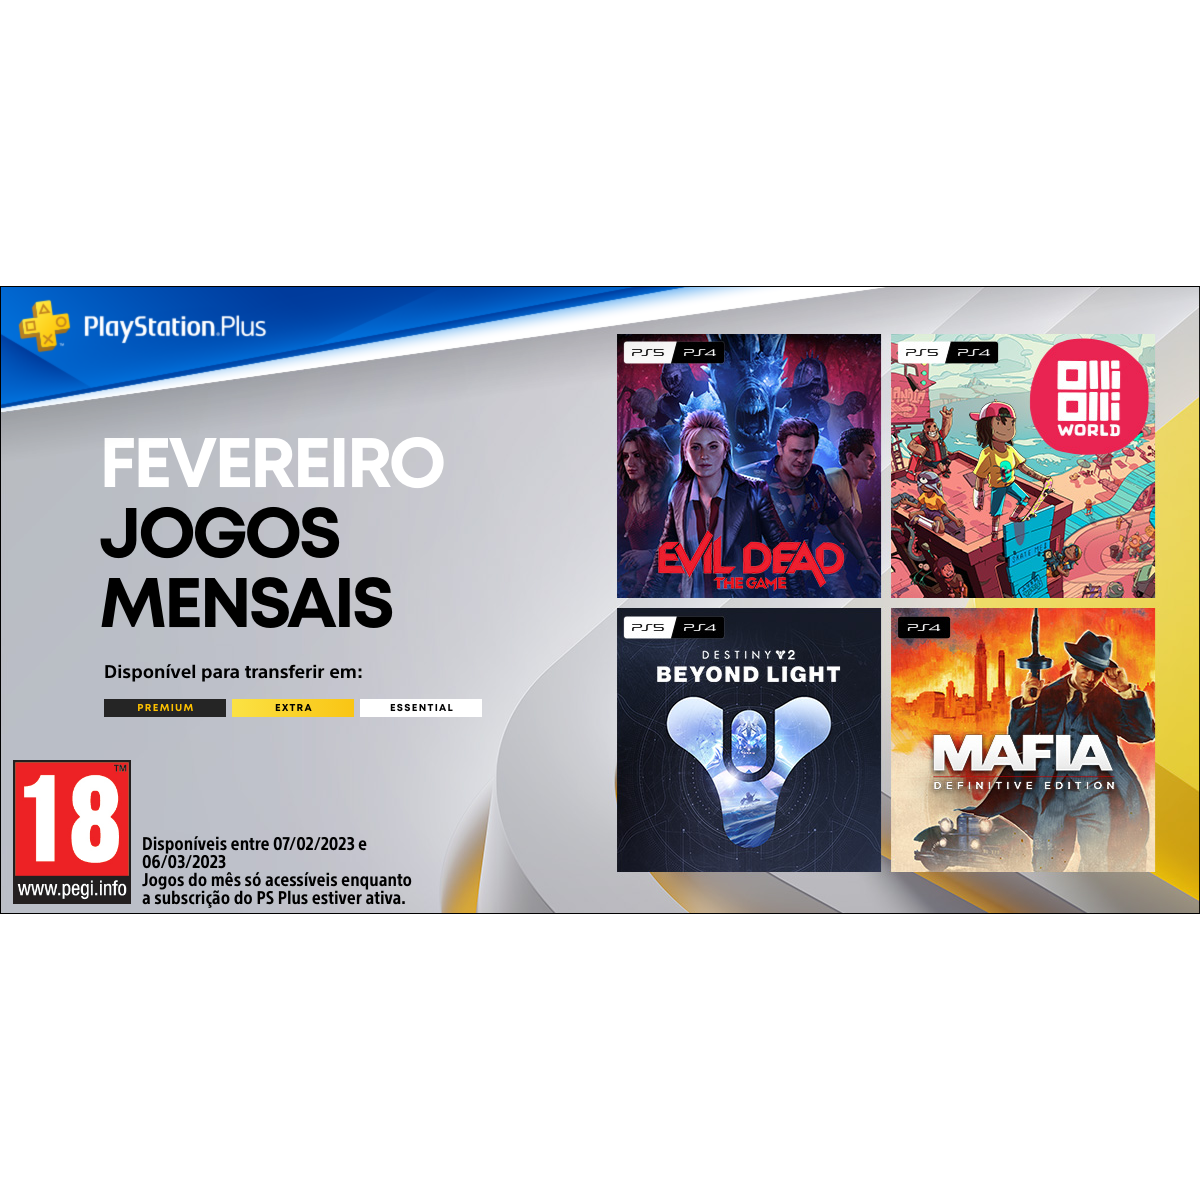 Mafia II: Definitive Edition e mais jogos chegam à PS Plus em novembro